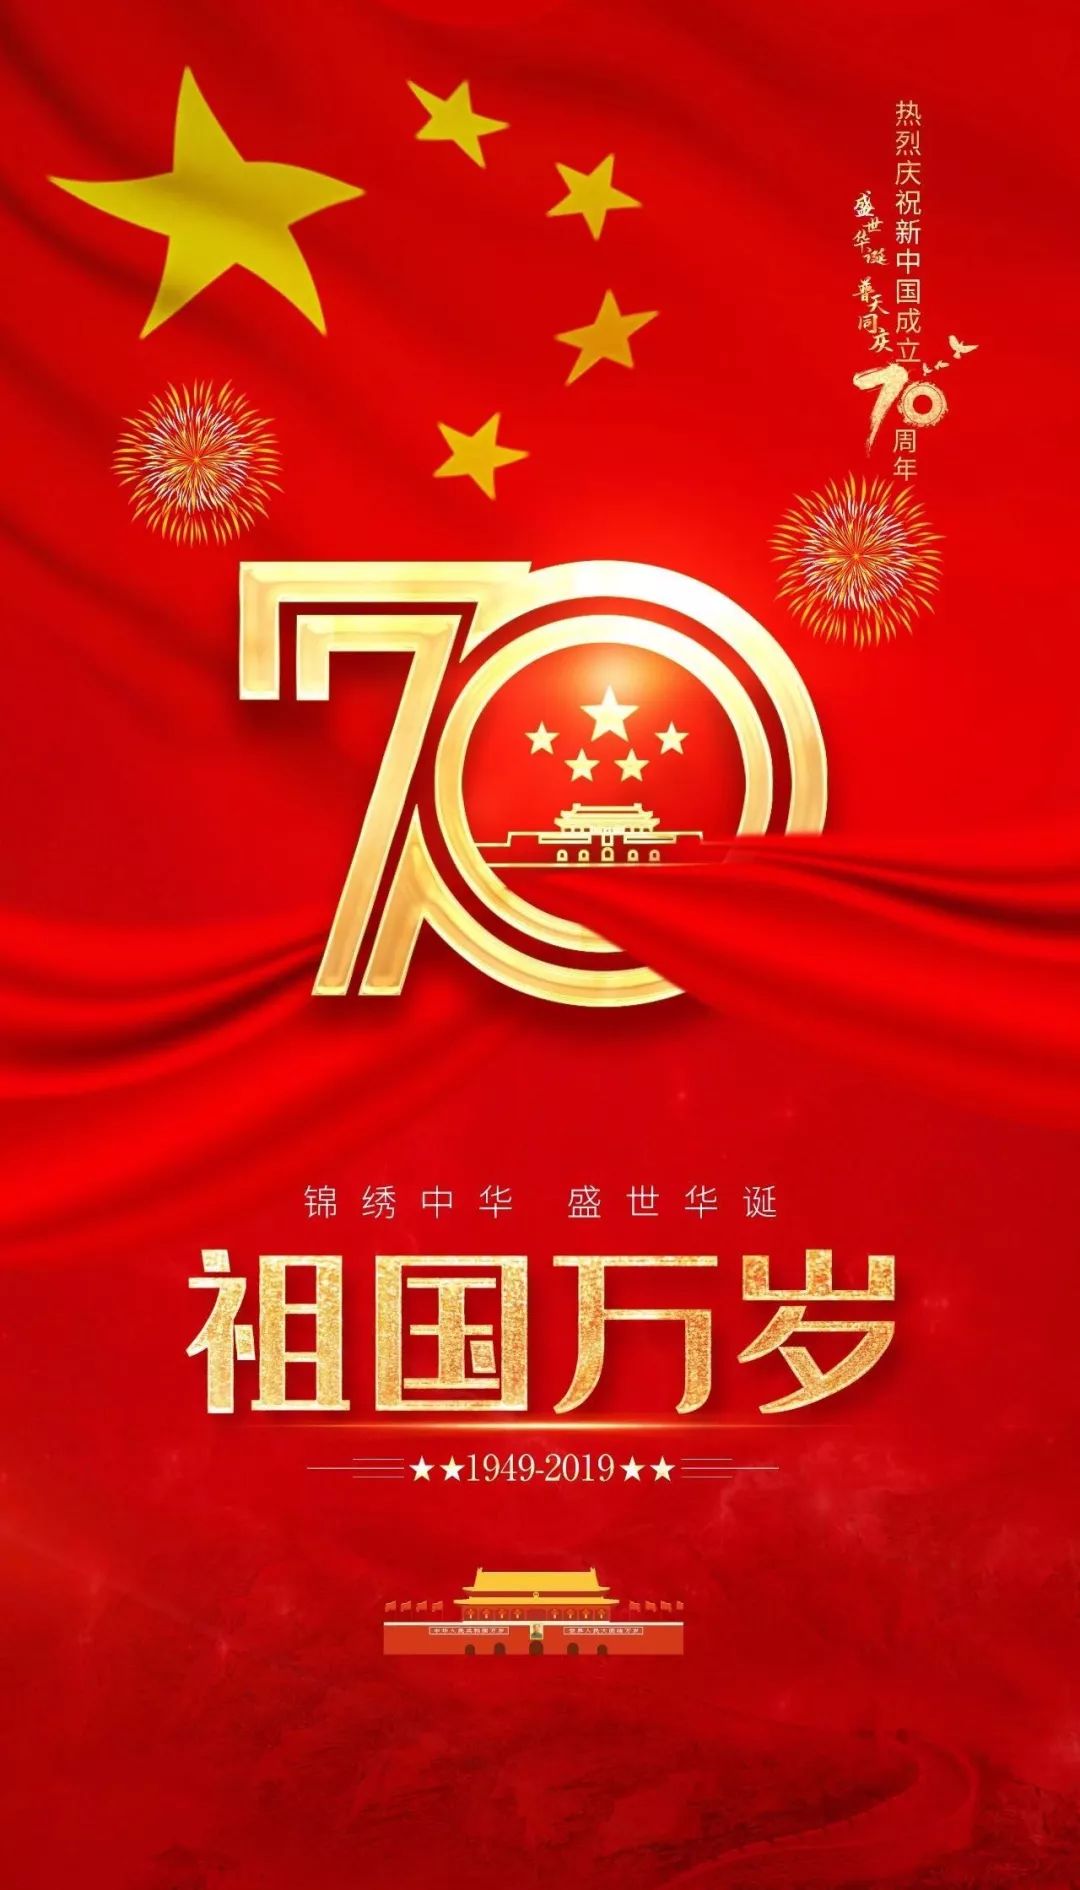 热烈庆祝中华人民共和国成立70周年!